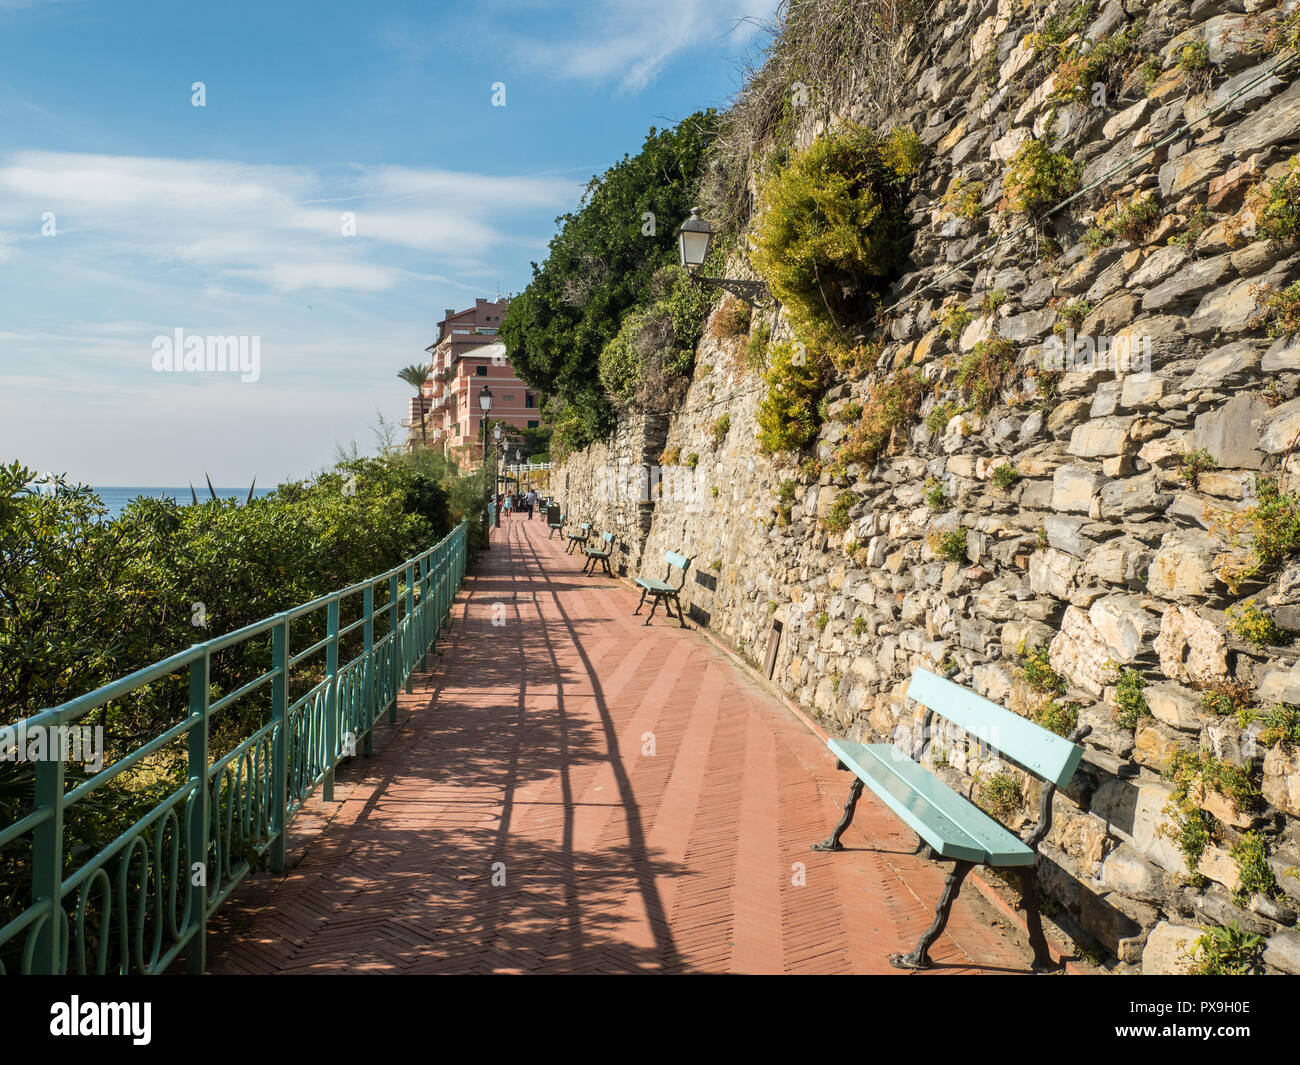 'Passeggiata Anita Garibaldi' seaside path/promenade in Nervi, a fishing village in the district of Genoa, Liguria region, Italy Stock Photo